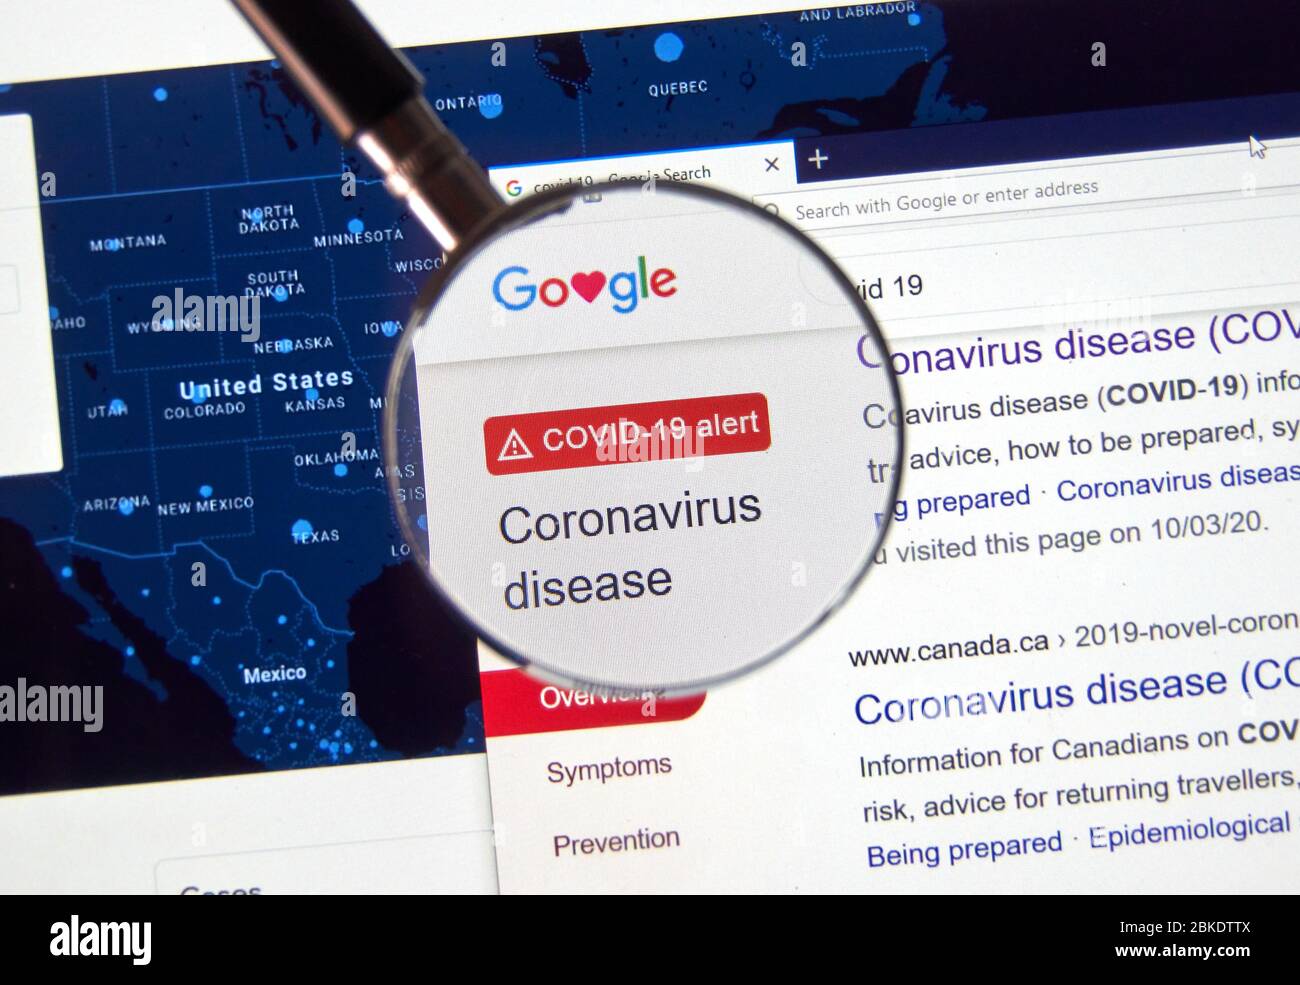 Montreal, Canada - 26 aprile 2020: SOS Alert per quanto riguarda Coronavirus COVID-19 su google. La malattia da coronavirus 2019 COVID-19 è una malattia infettiva causata Foto Stock